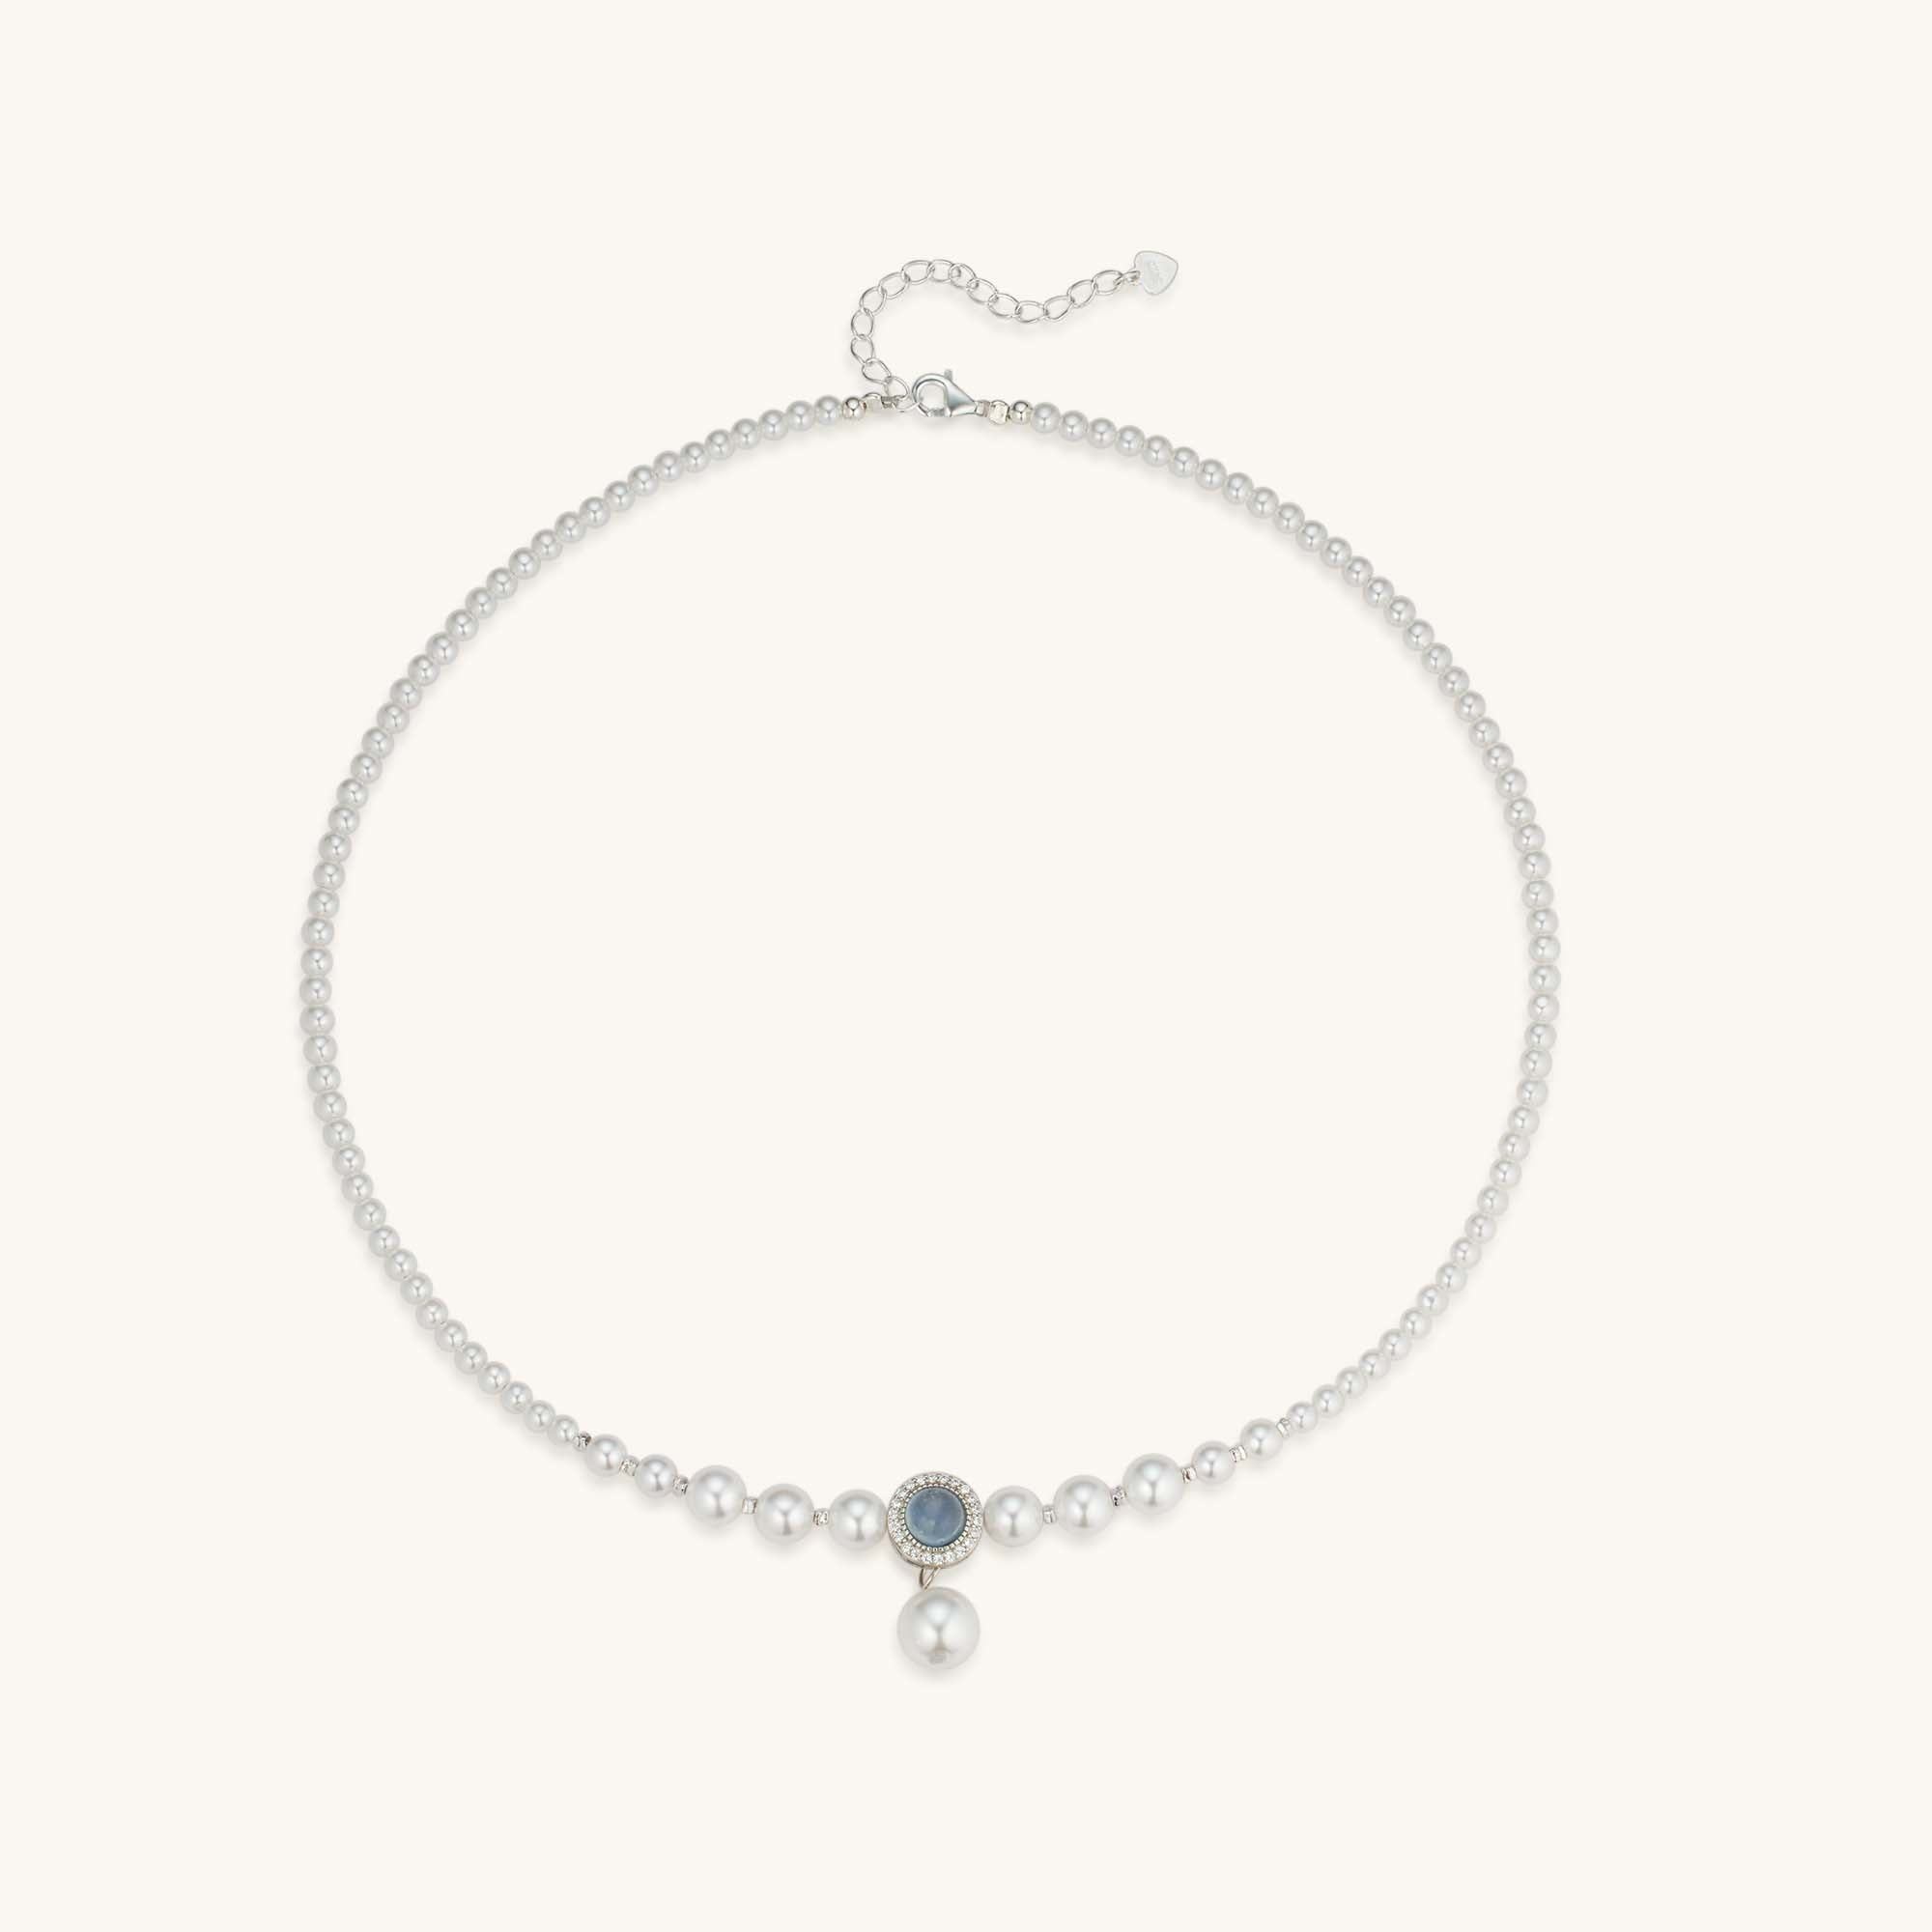 Gentle Gemstone Pearl Choker Necklace for Women - Kira LaLa